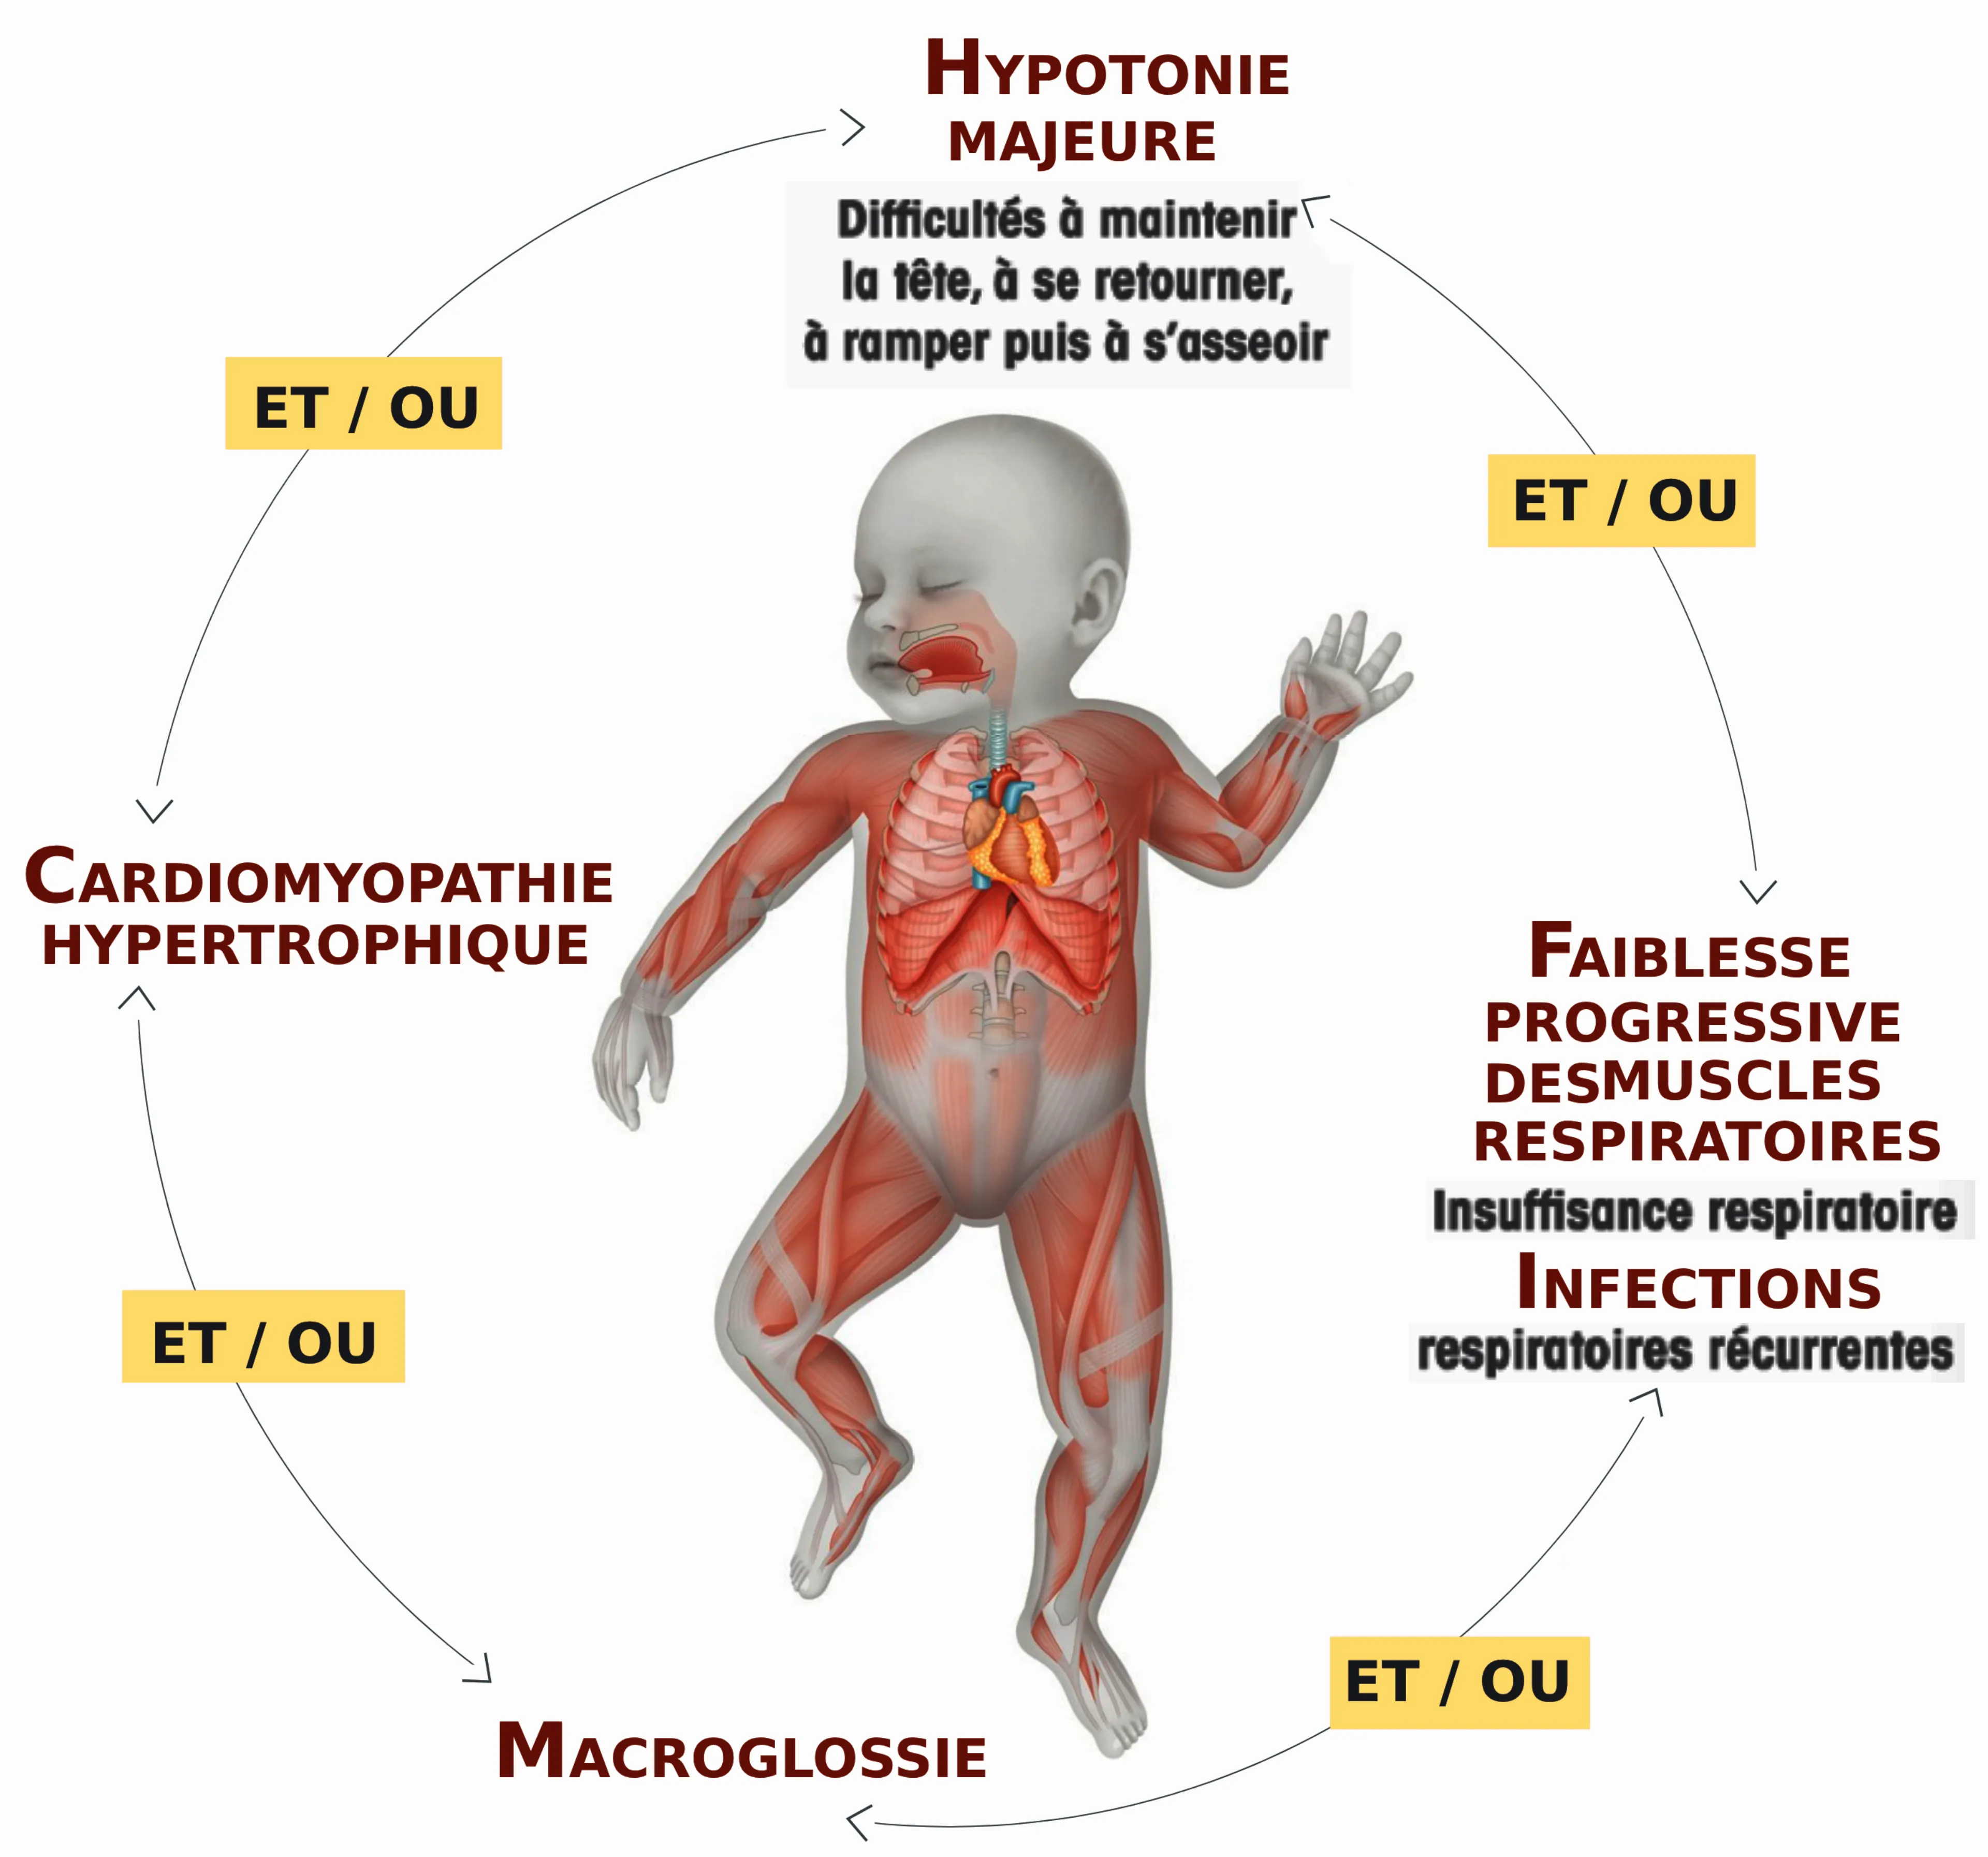 humanoïde enfant de face et de dos avec le détail des principaux signes d’appel : faiblesse musculaire, déformation du rachis